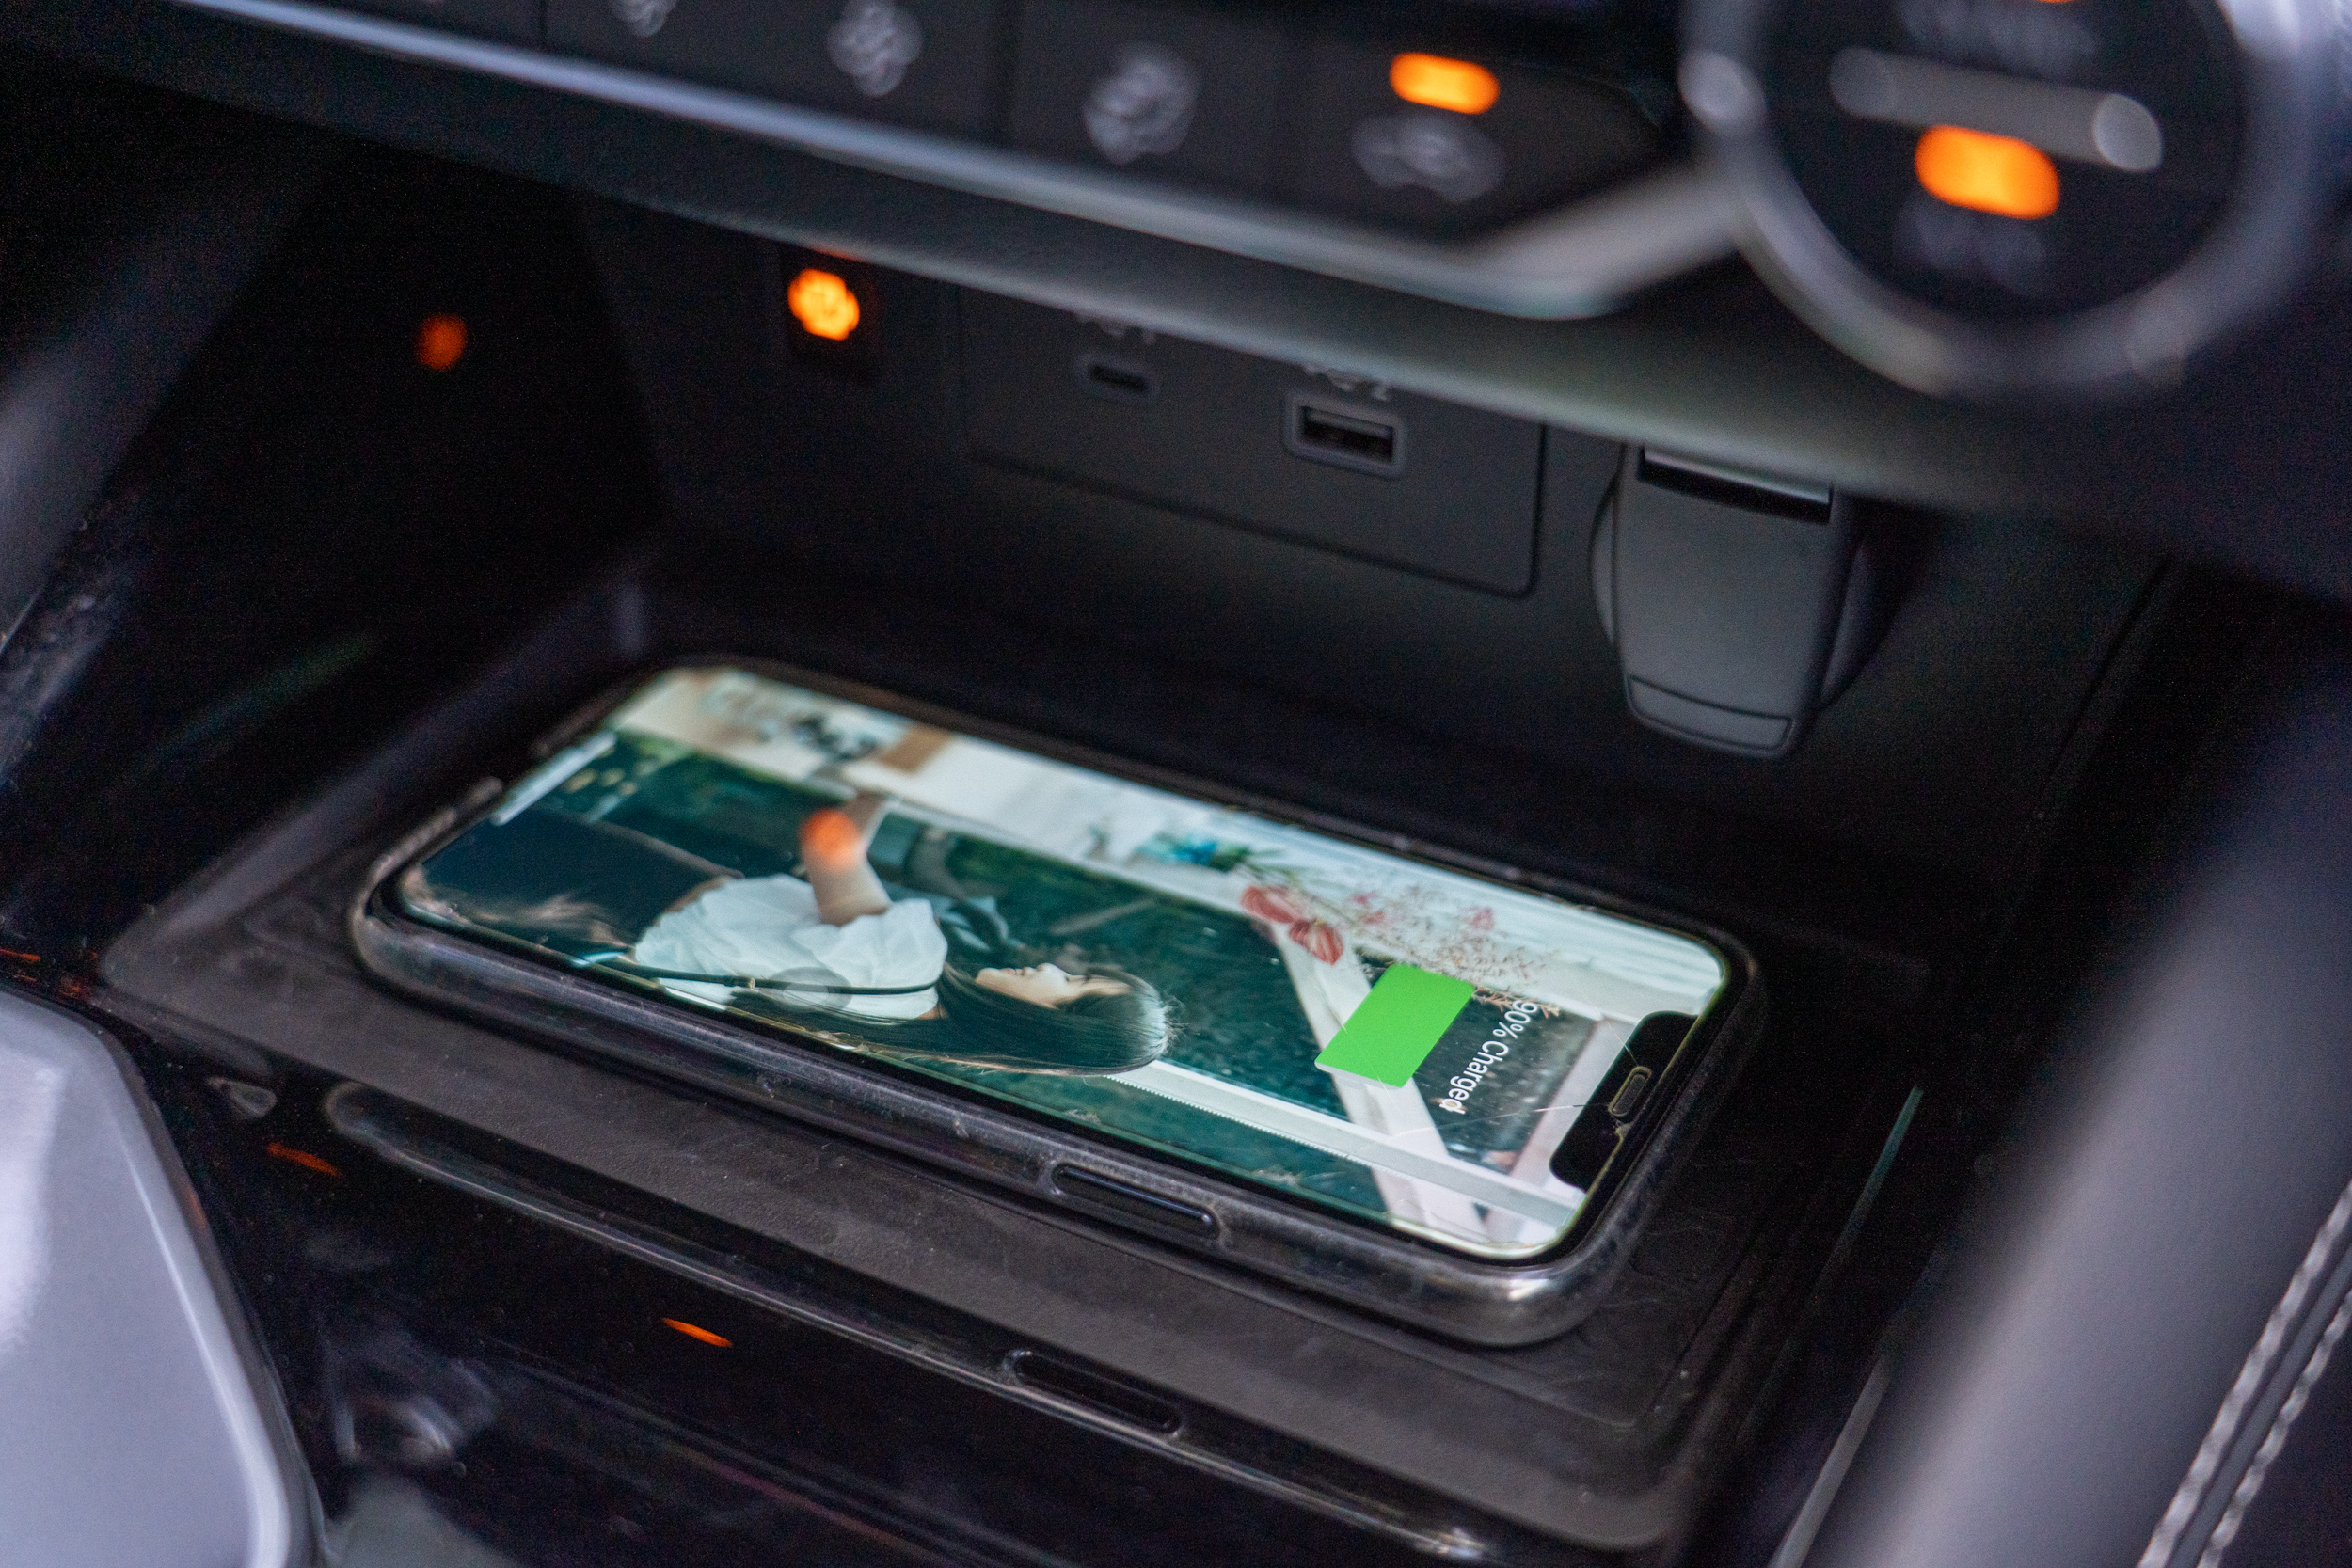 Qi 無線充電亦列為標配，搭配無線 Apple CarPlay 可構成完整的數位使用介面。